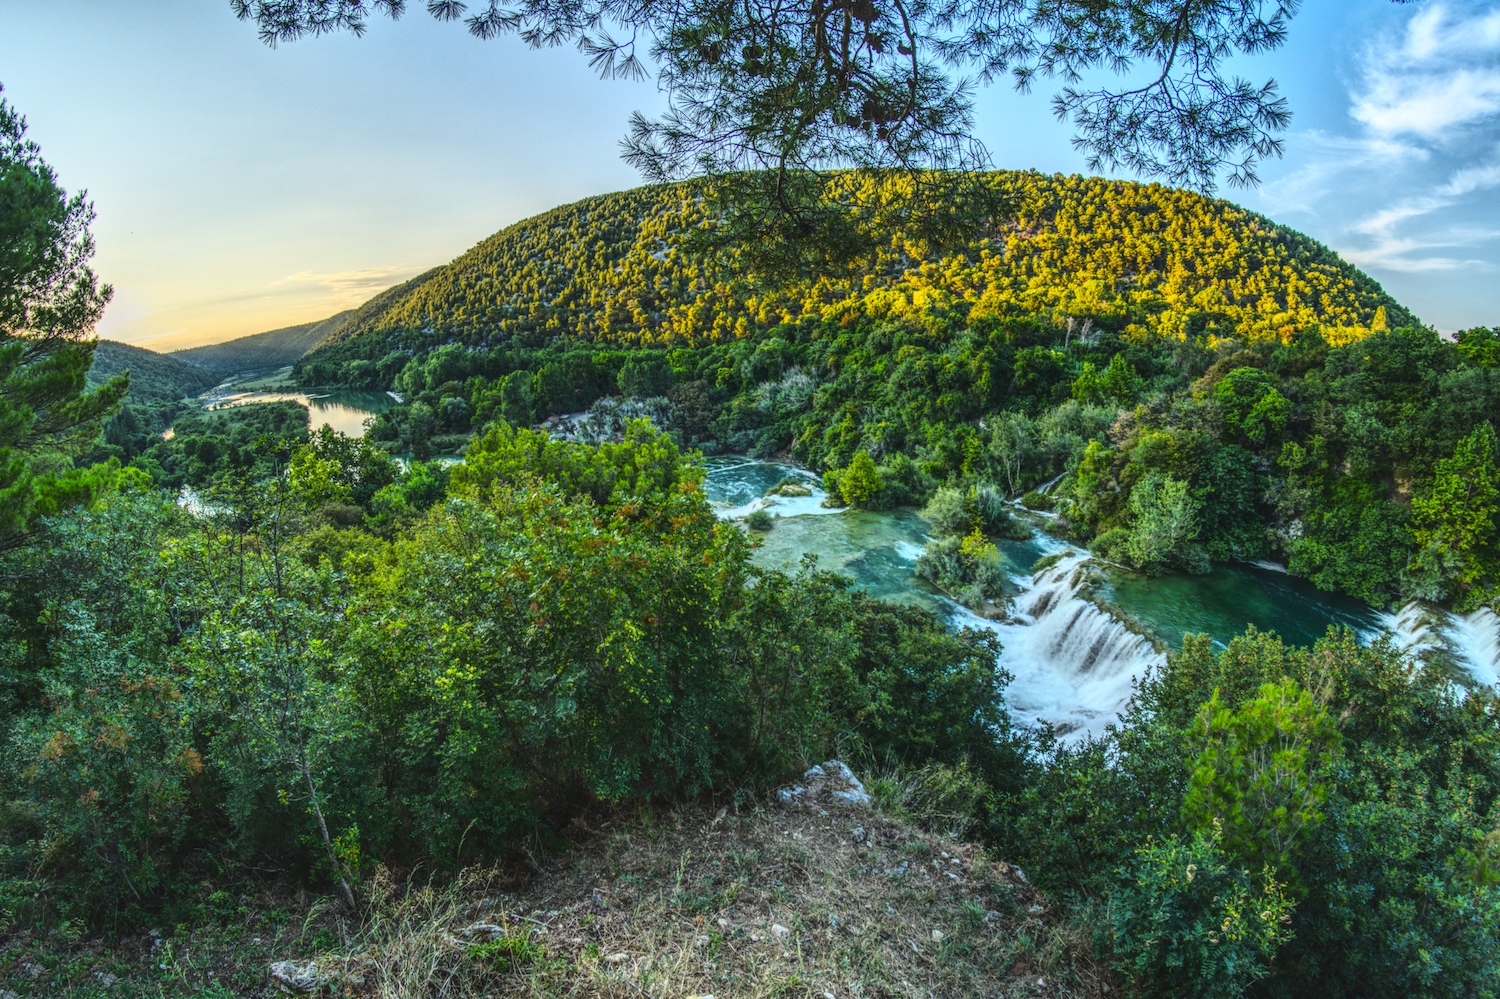 Am Ende der Route durch den Nationalpark Krka bietet sich uns ein tolles Panorama